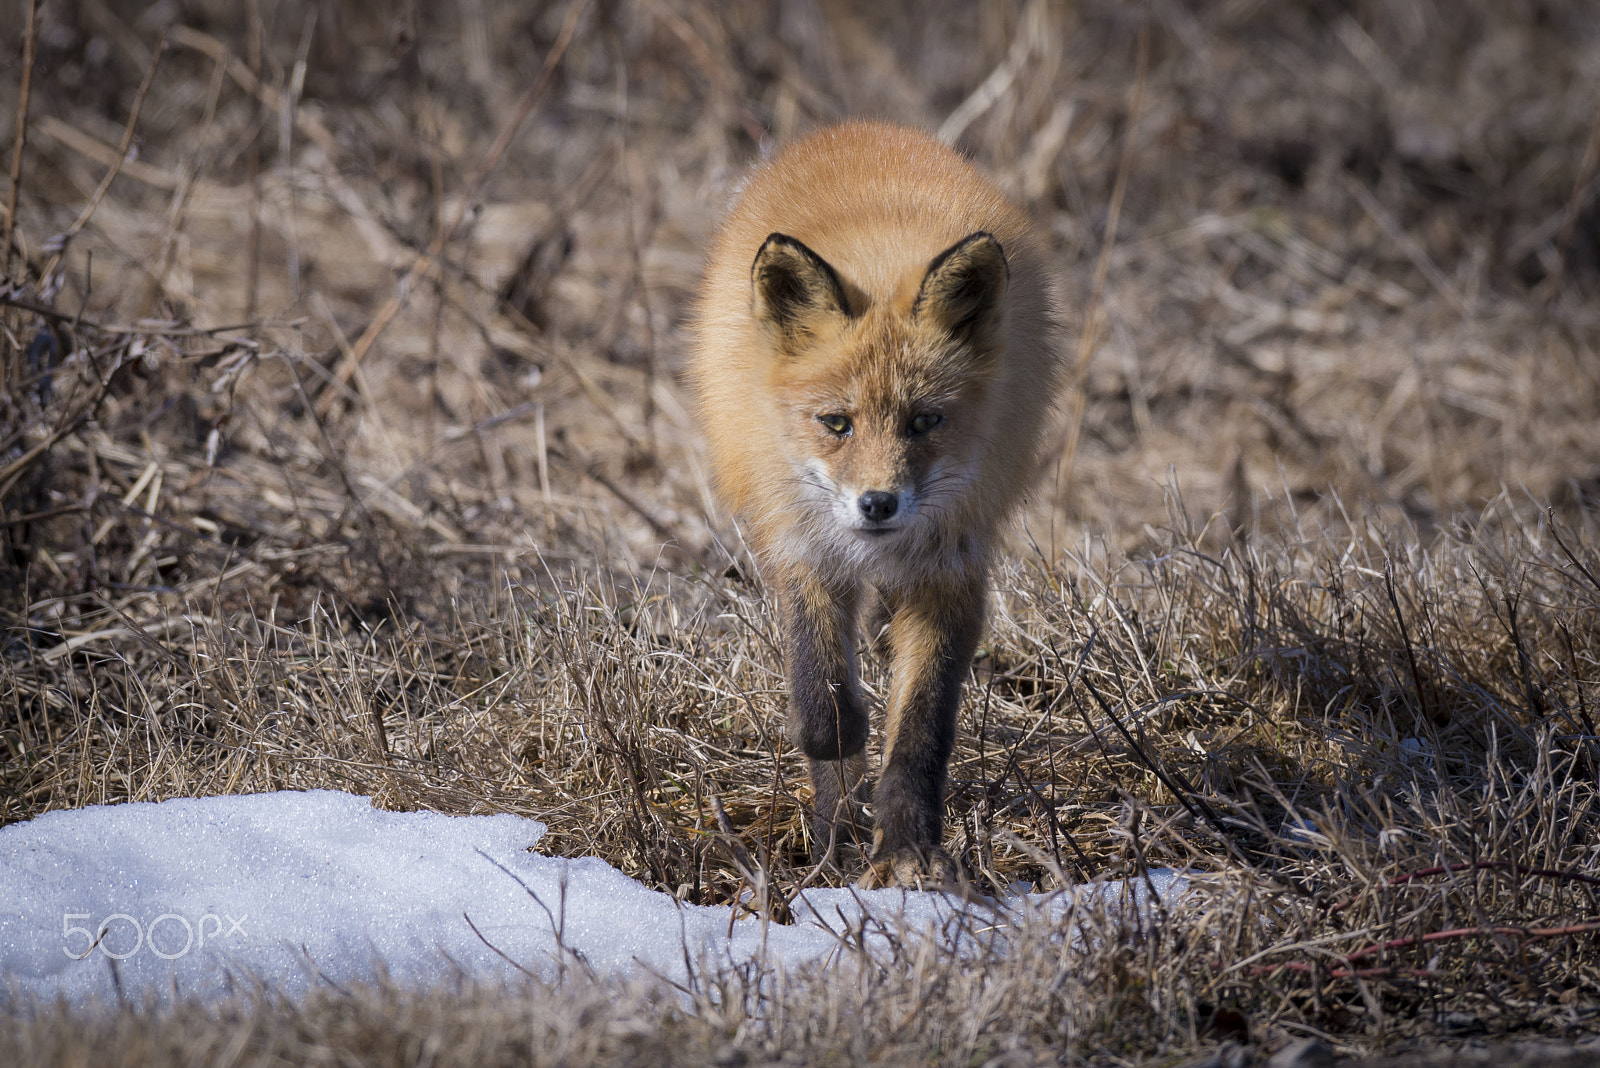 Nikon D610 sample photo. An old fox photography